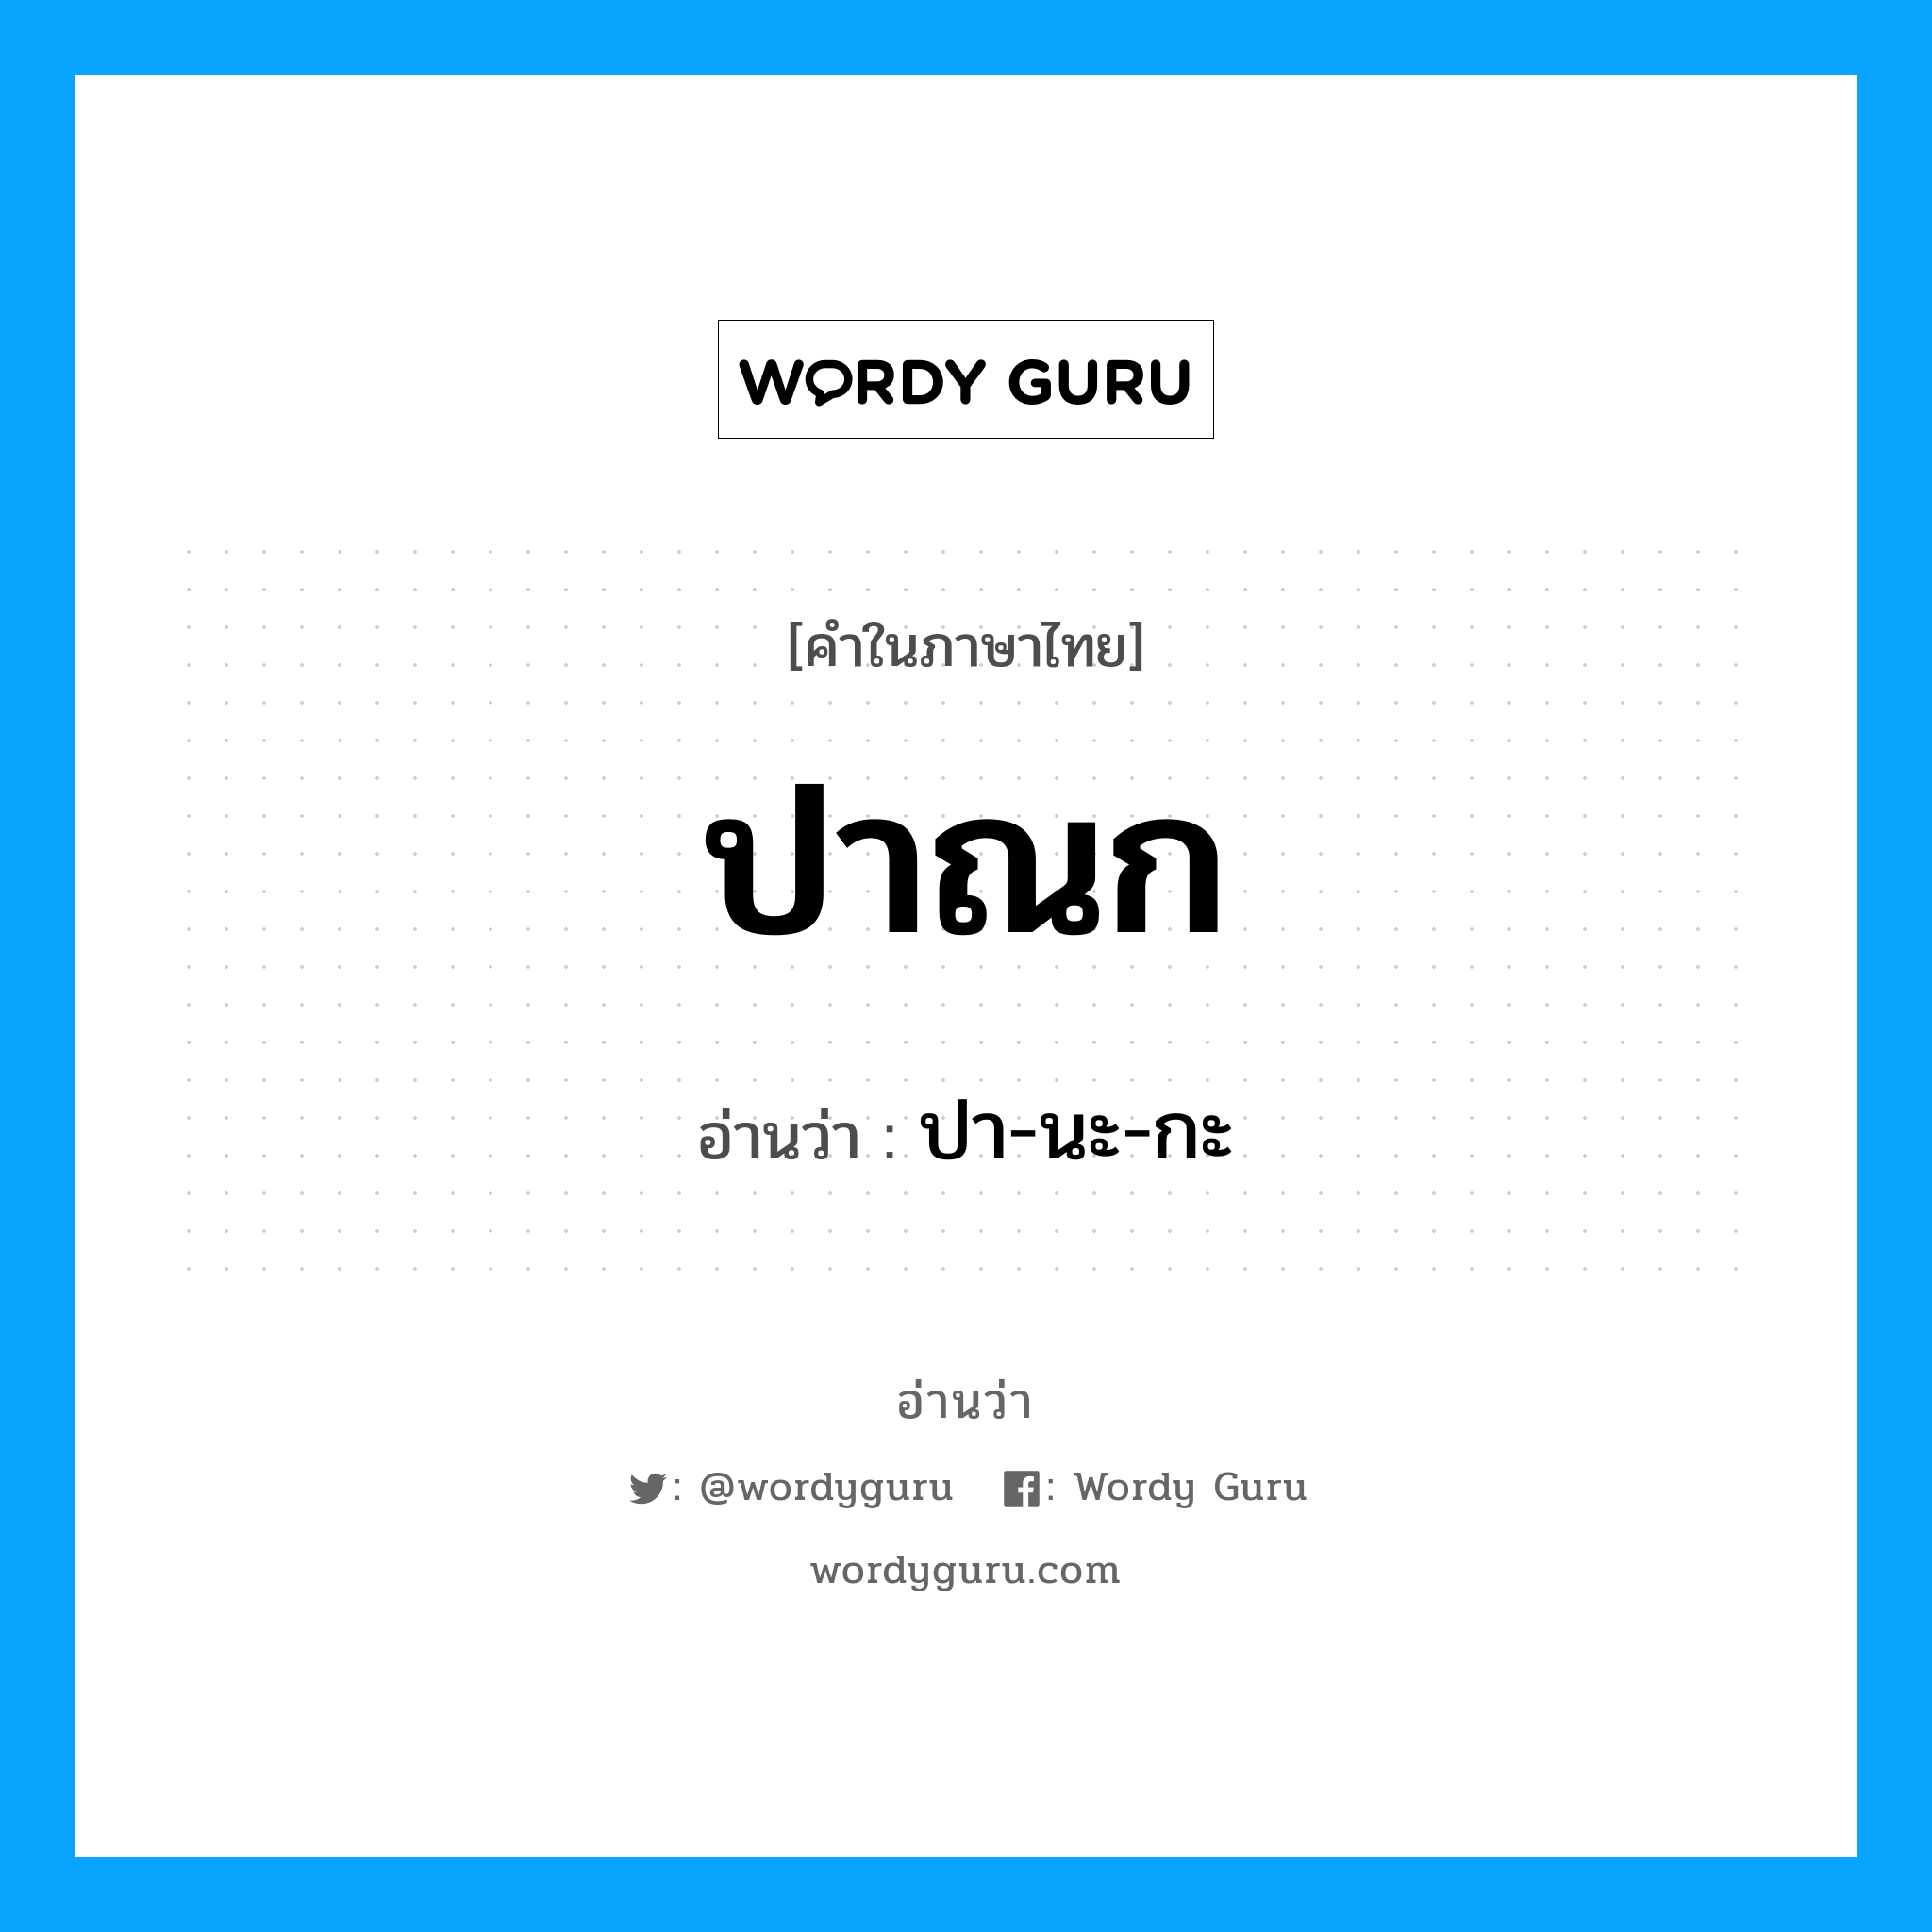 ปา-นะ-กะ เป็นคำอ่านของคำไหน?, คำในภาษาไทย ปา-นะ-กะ อ่านว่า ปาณก